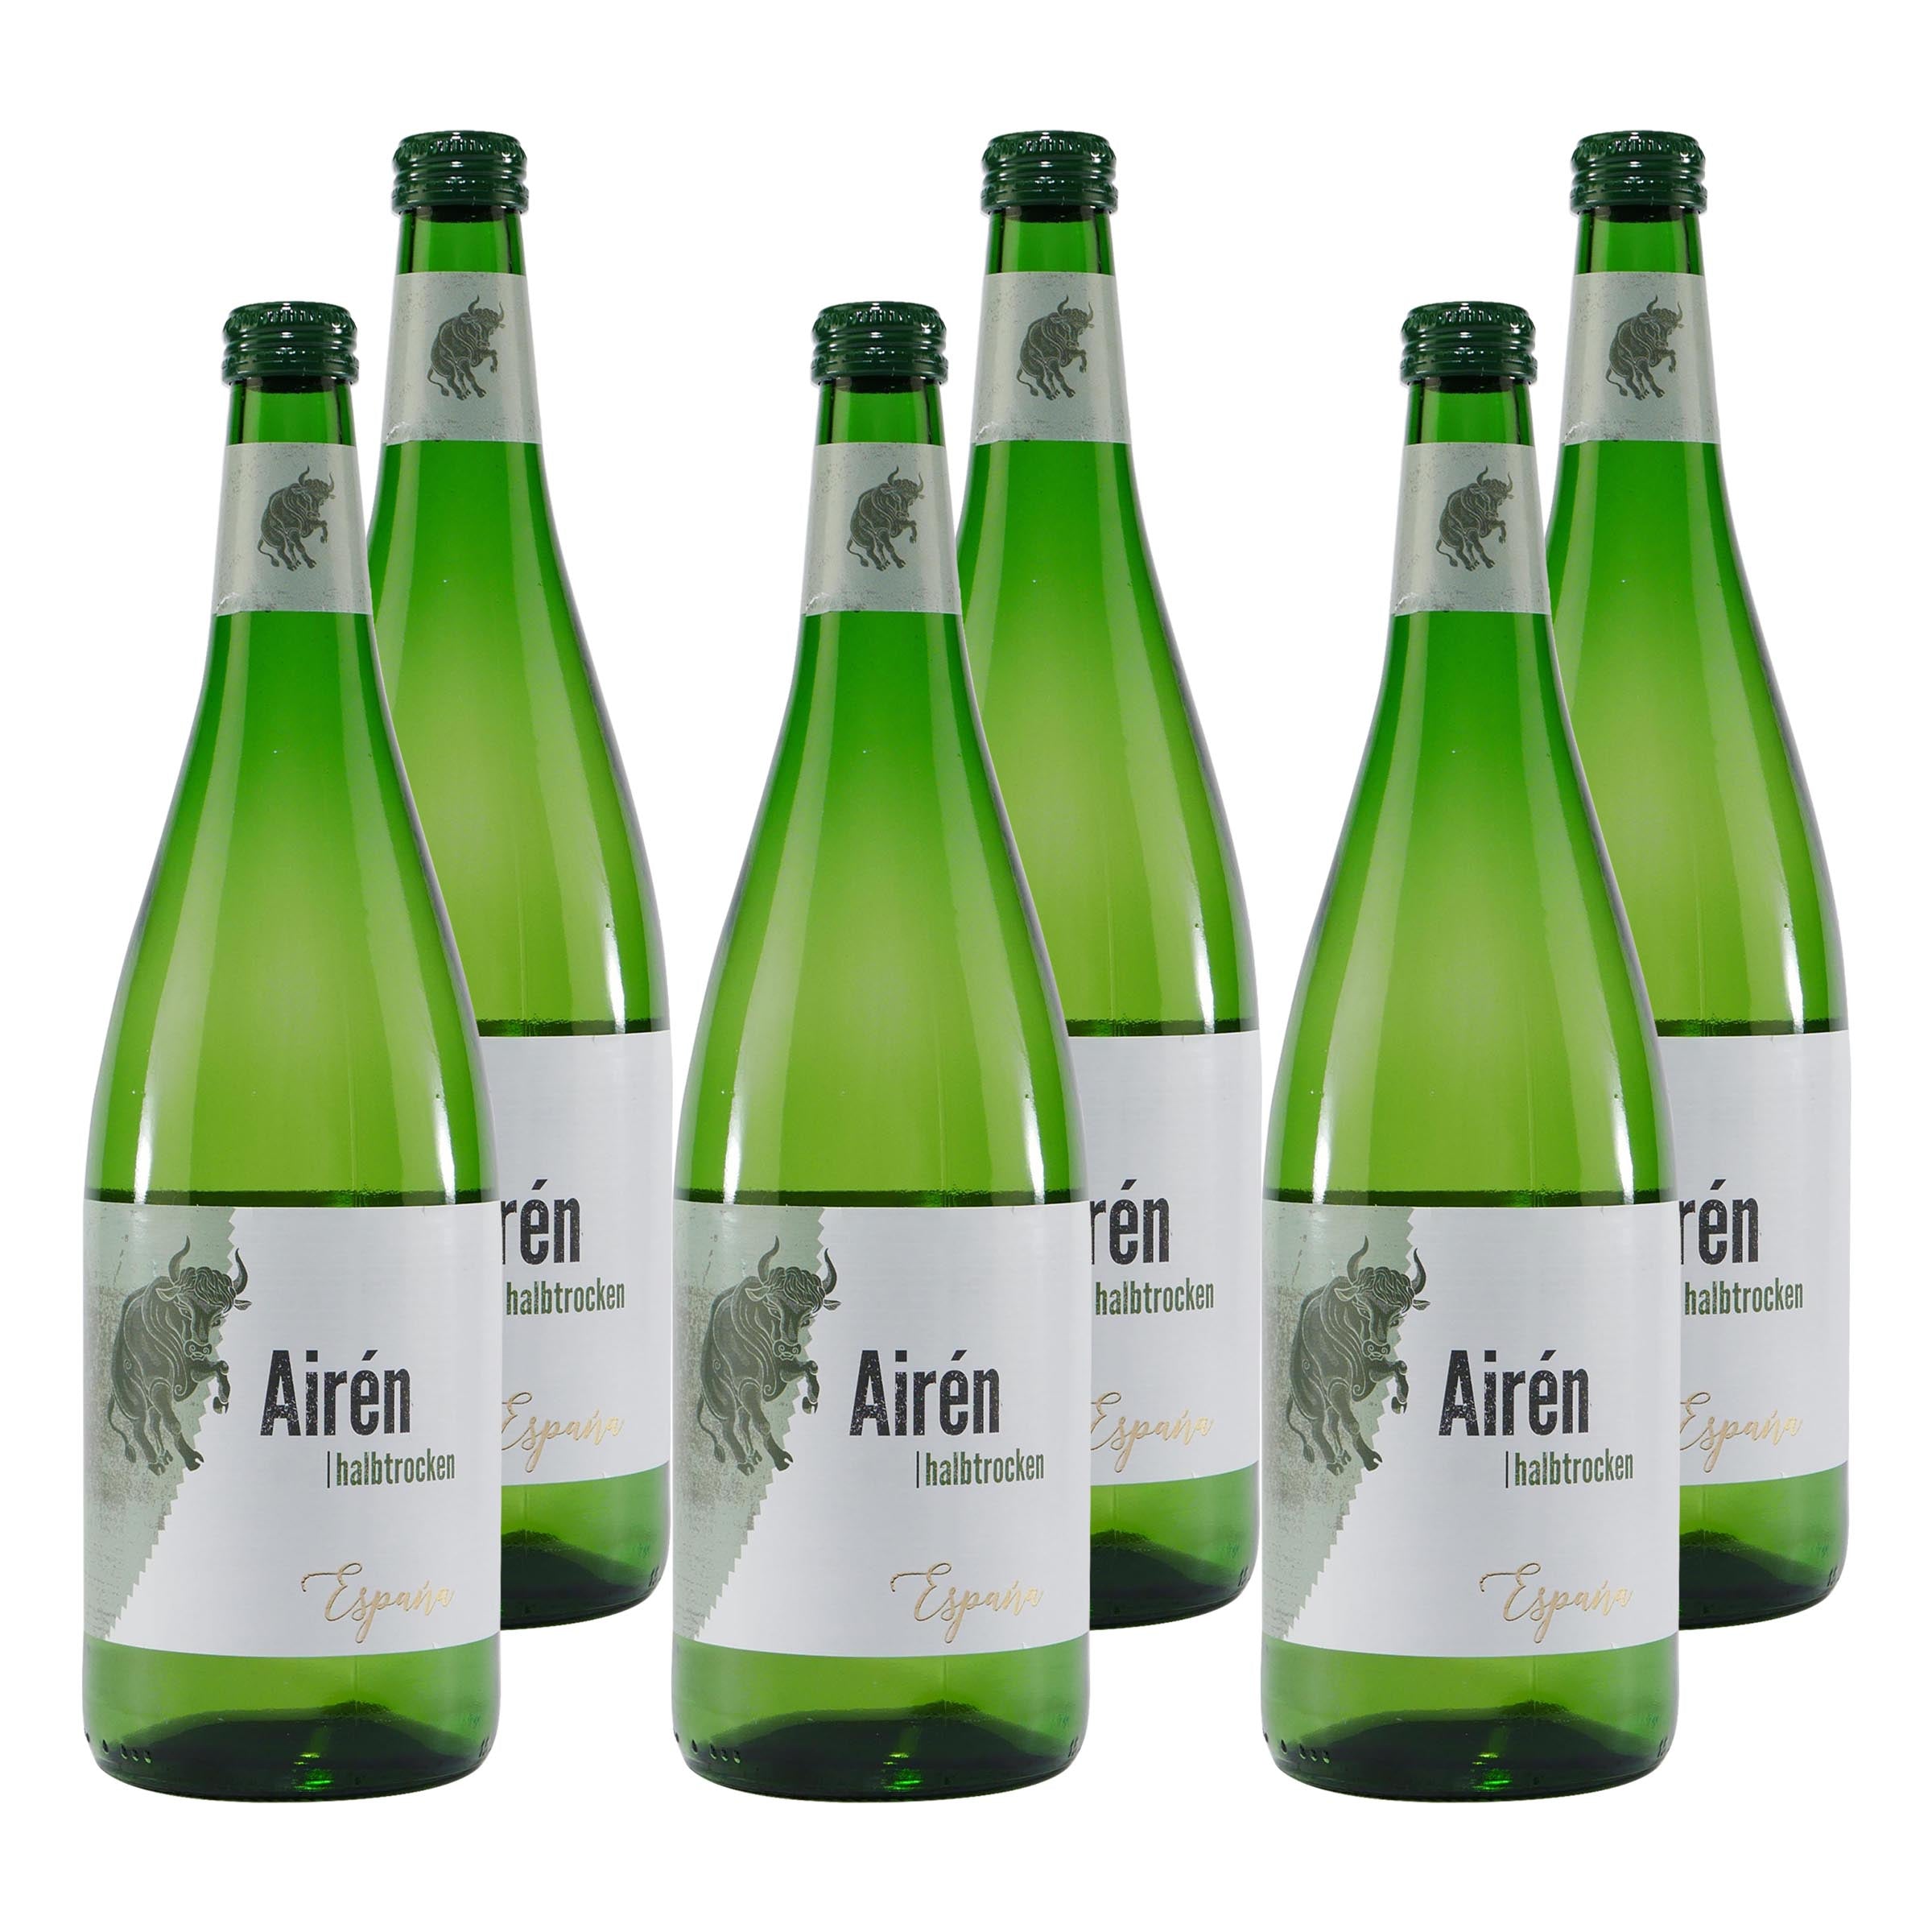 Airén Weißwein -halbtrocken- (6 x 1,0L)